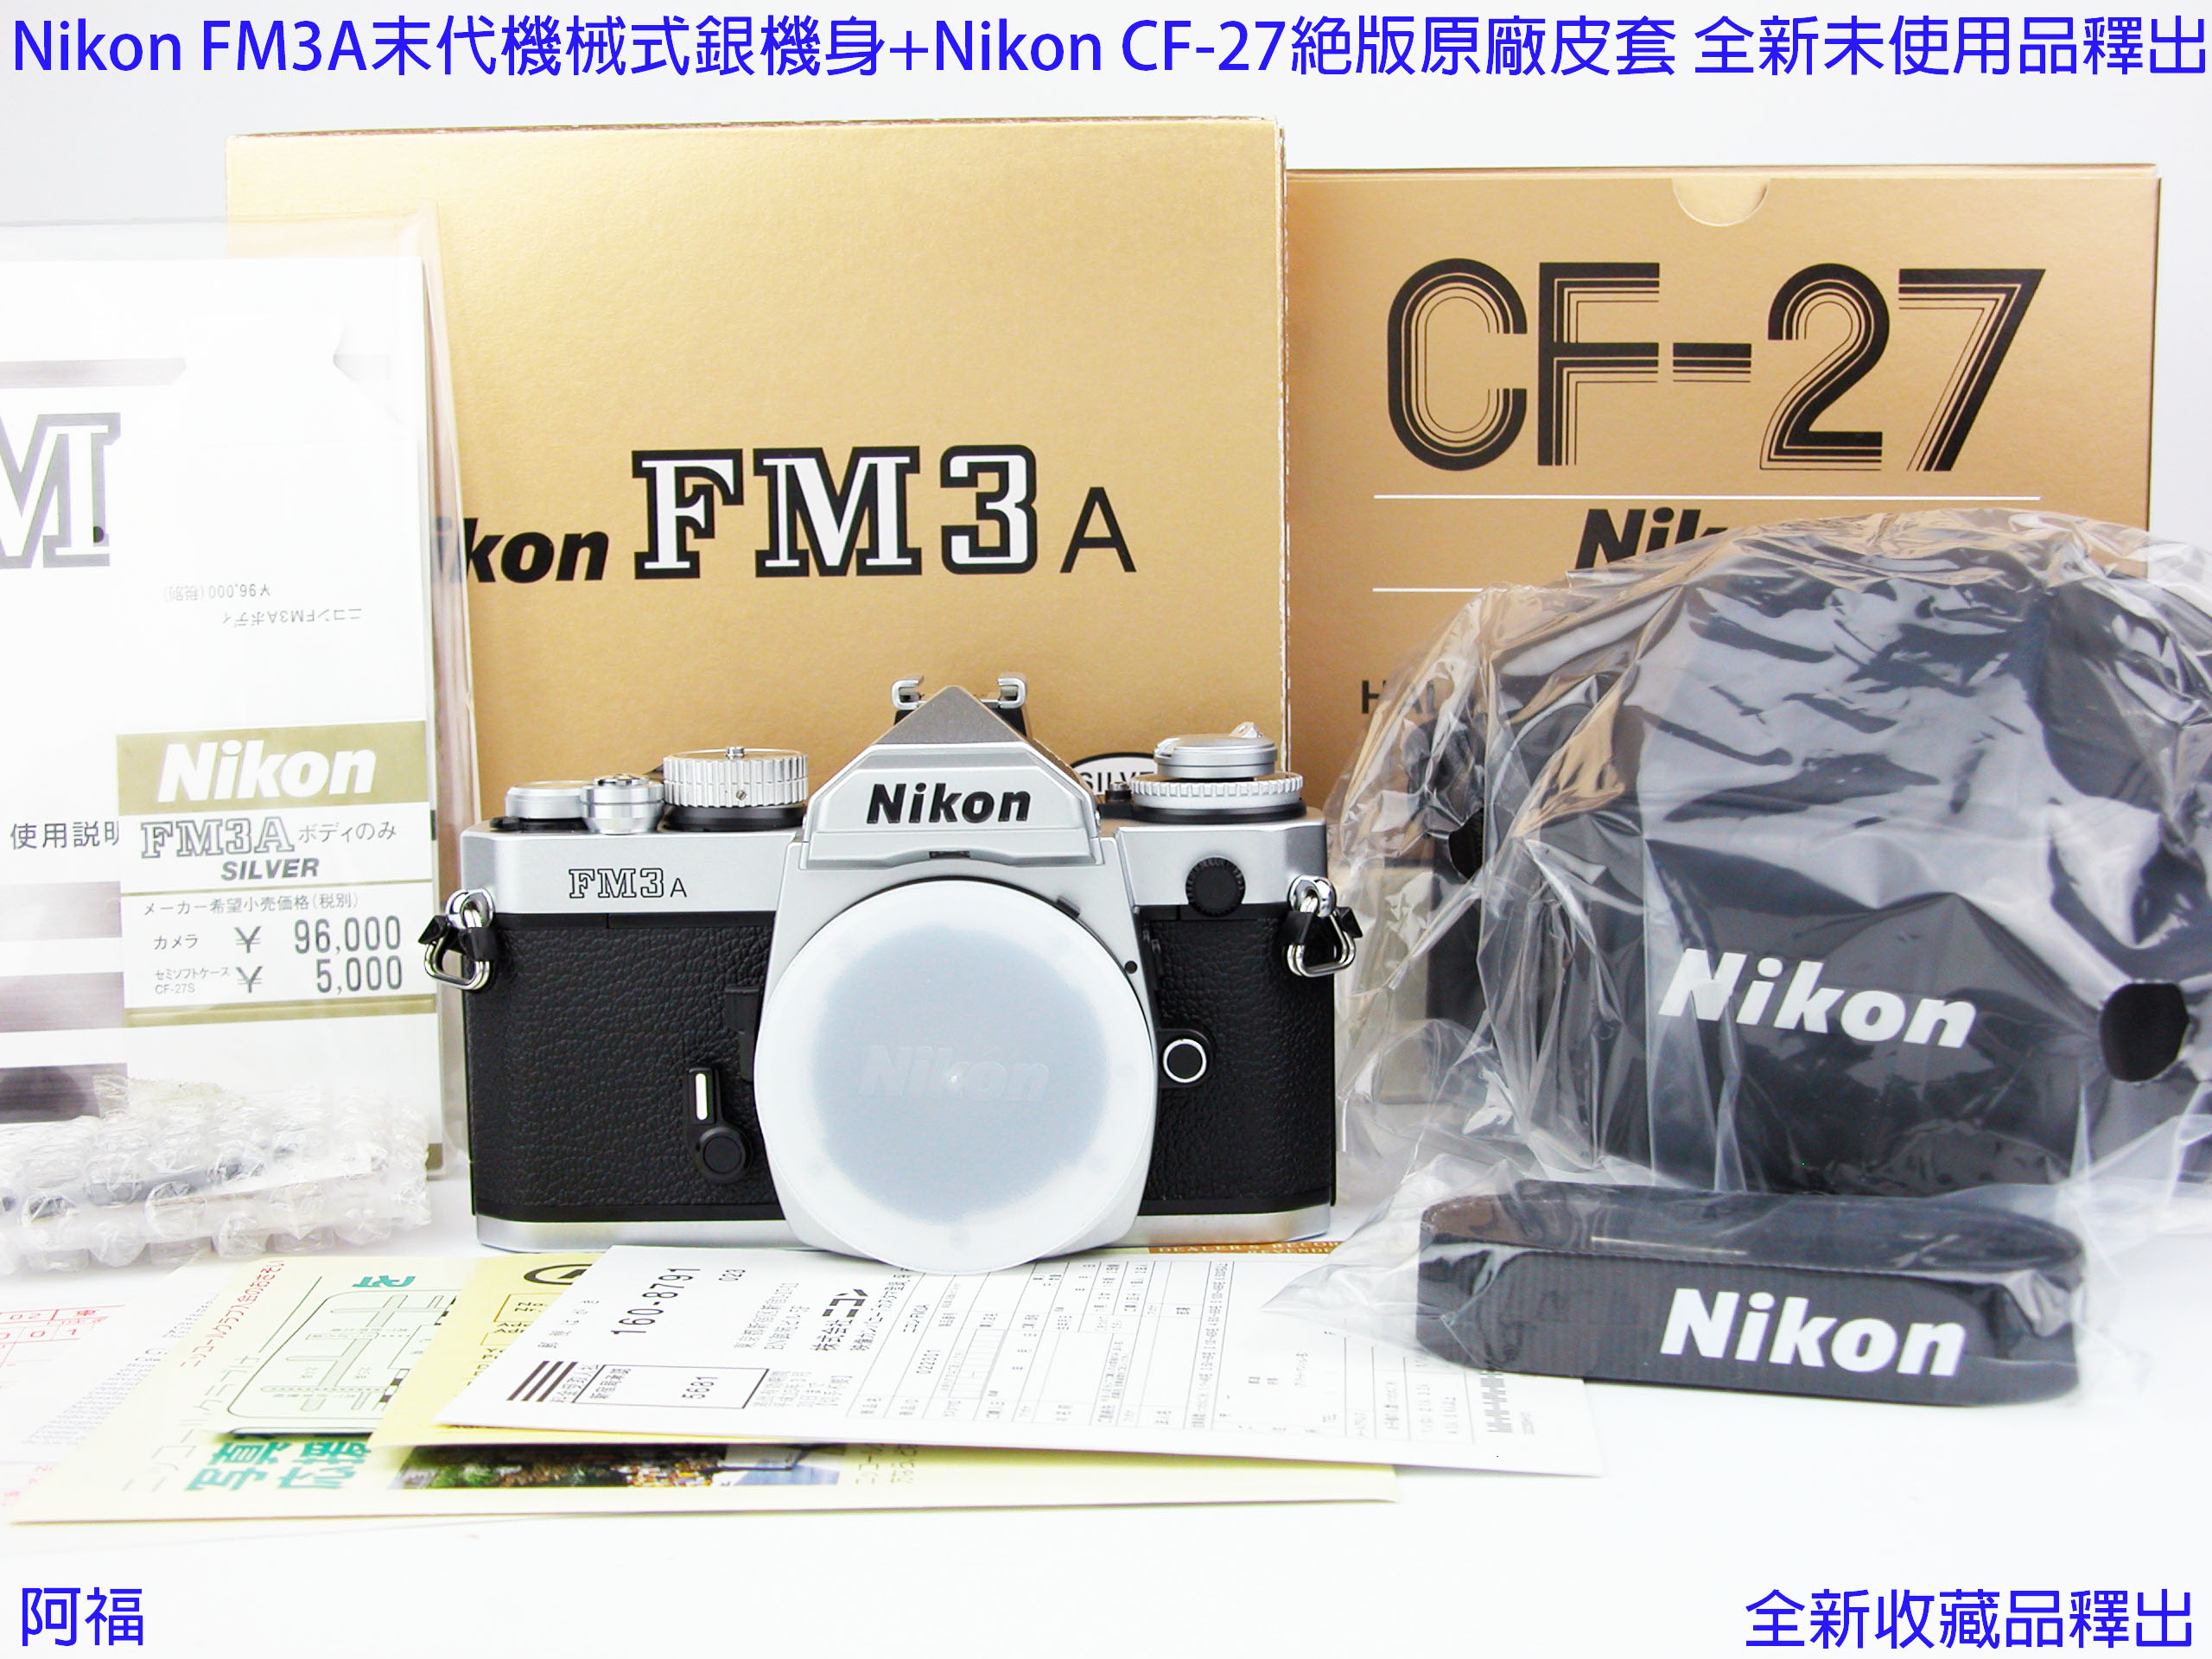 絕版Nikon FM3A 末代機械式銀機身+Nikon CF-27絕版原廠皮套全新未使用